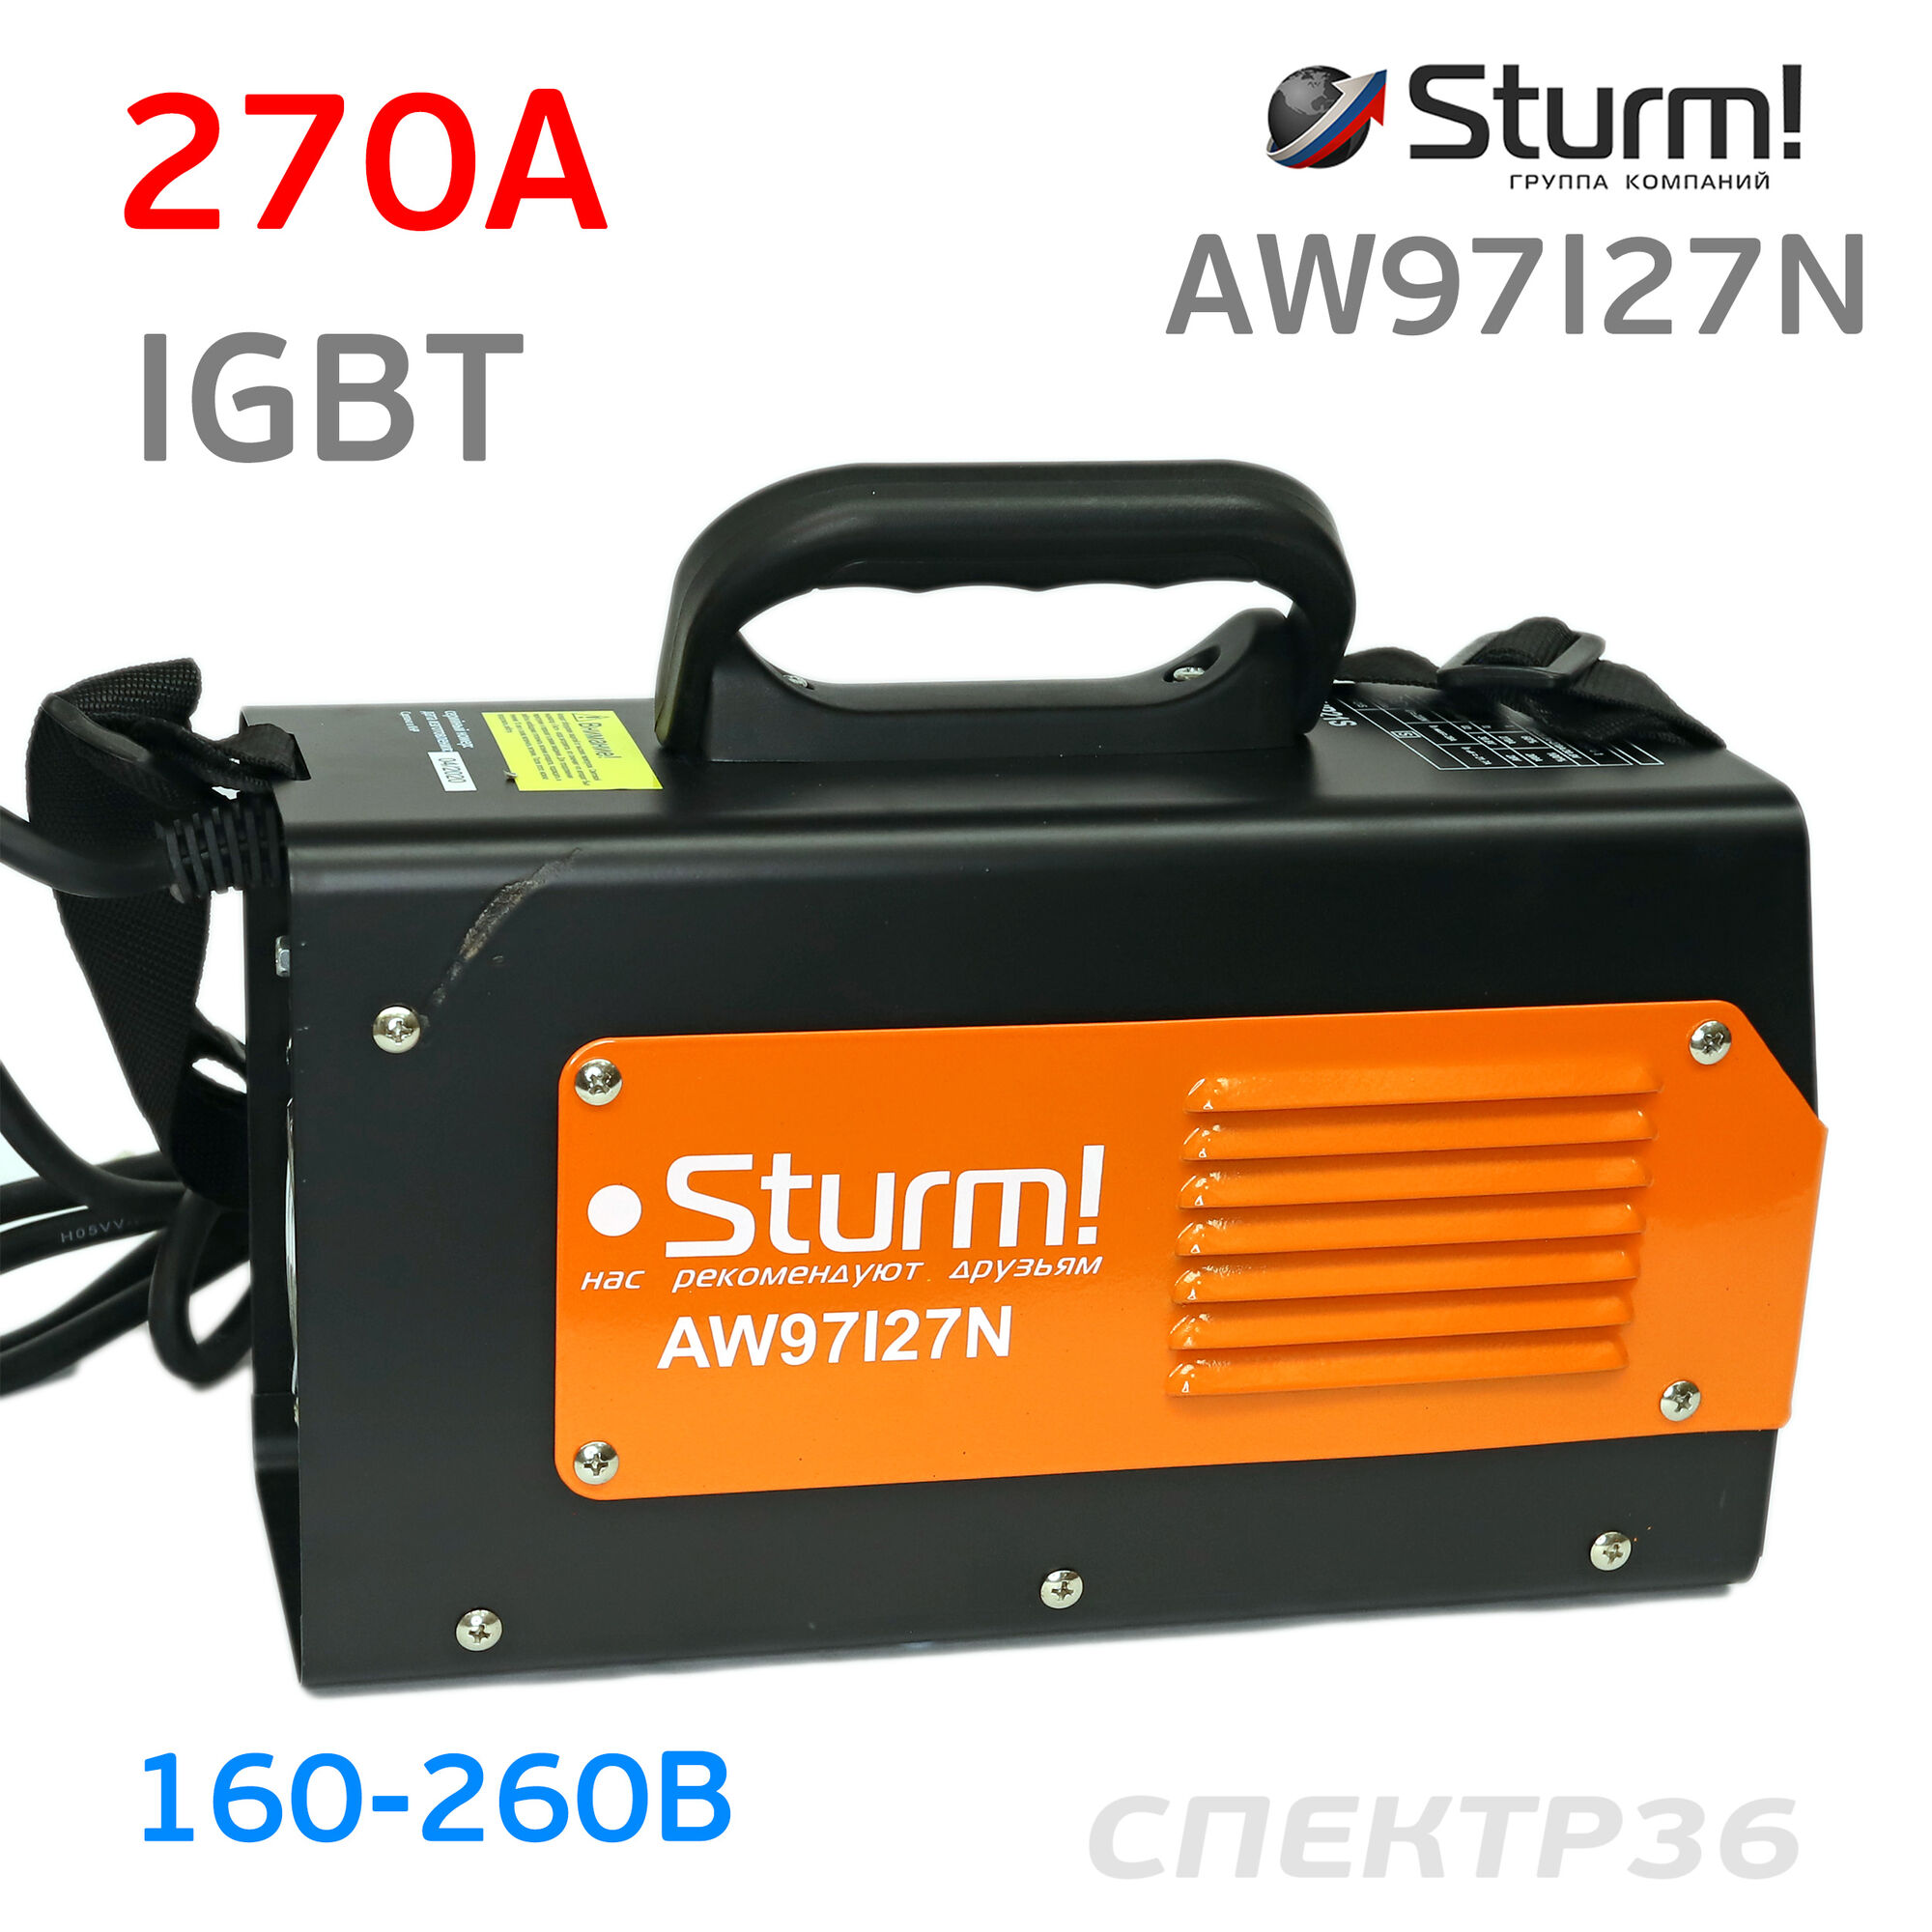 Инвертор Sturm AW97I27N (160-260В, 270 А) IGBT сварочный 5